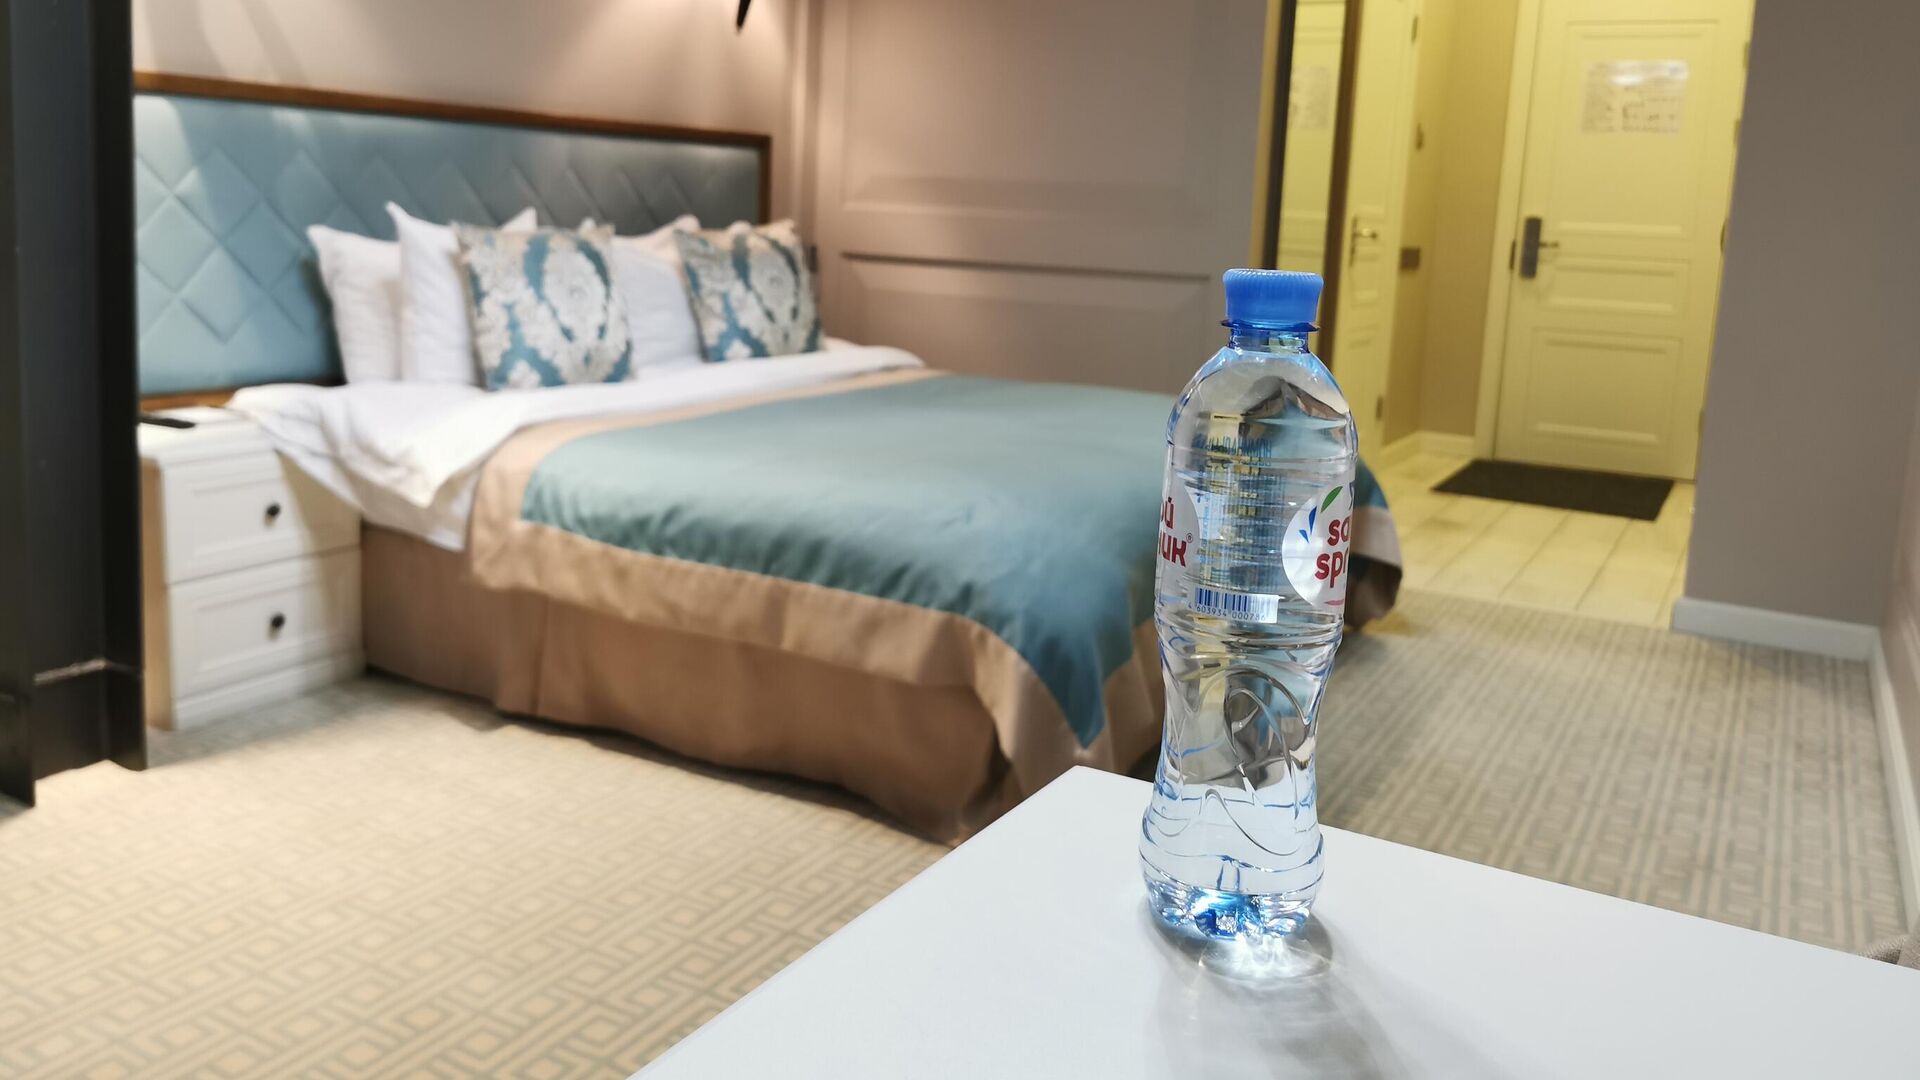 Бутылка воды на столике в номере 239 гостиницы Xander Hotel в Томске - РИА Новости, 1920, 25.11.2020